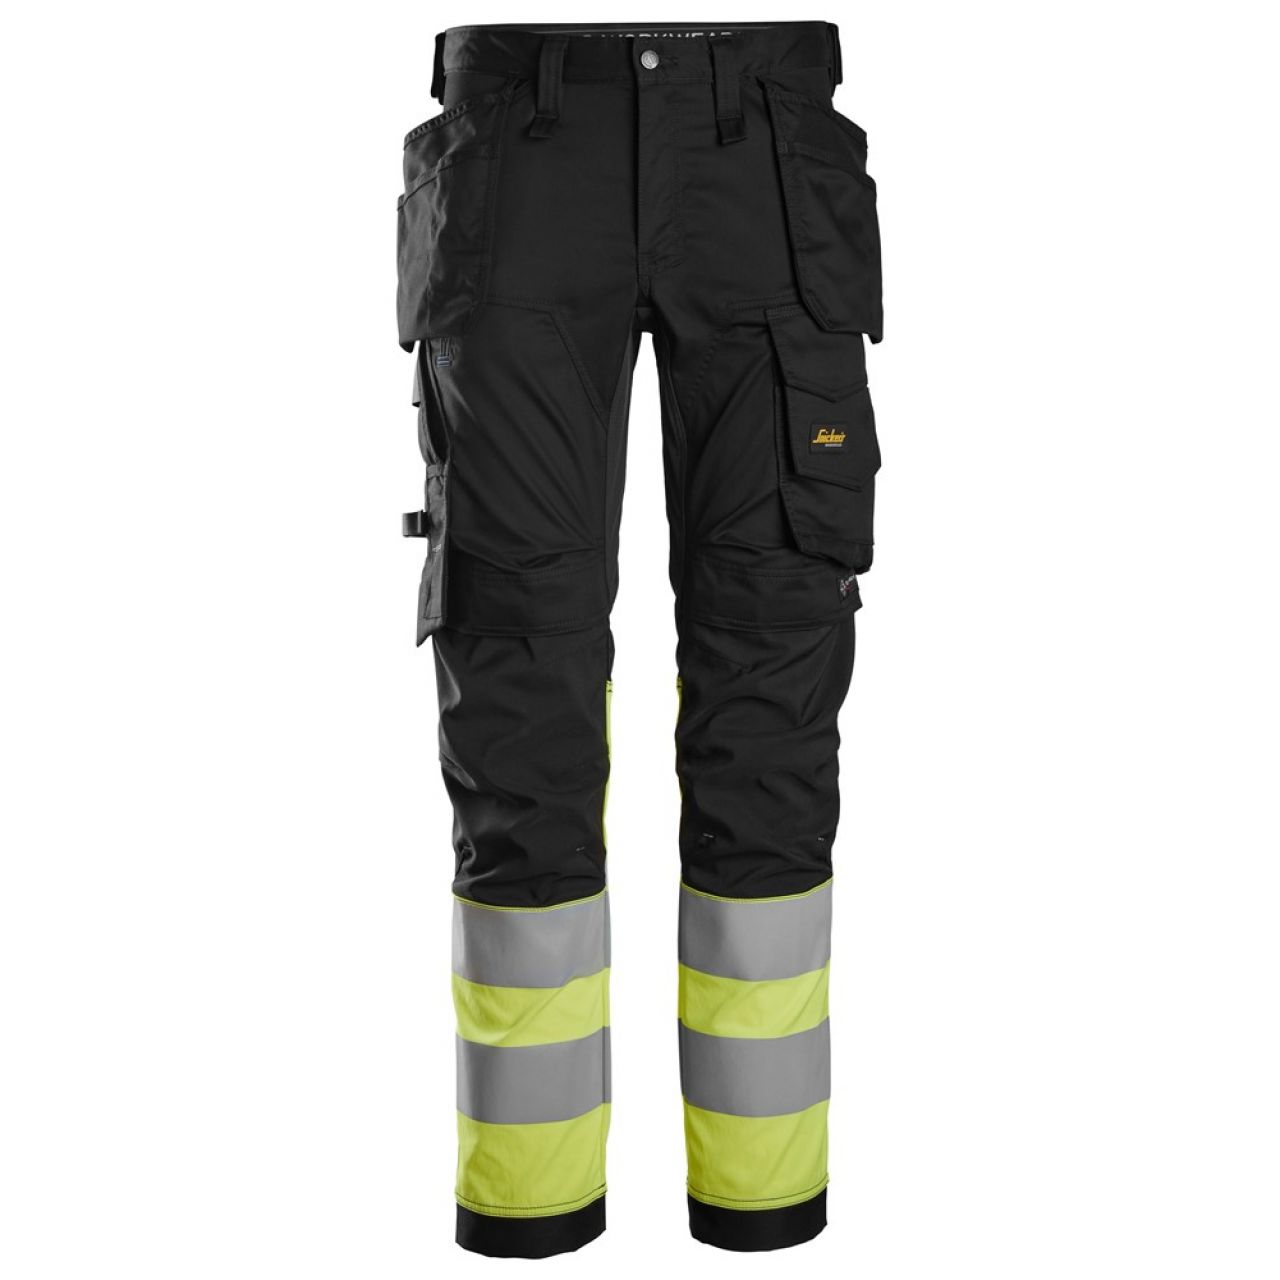 6234 Pantalones largos de trabajo elásticos de alta visibilidad clase 1 con bolsillos flotantes negro-amarillo talla 150